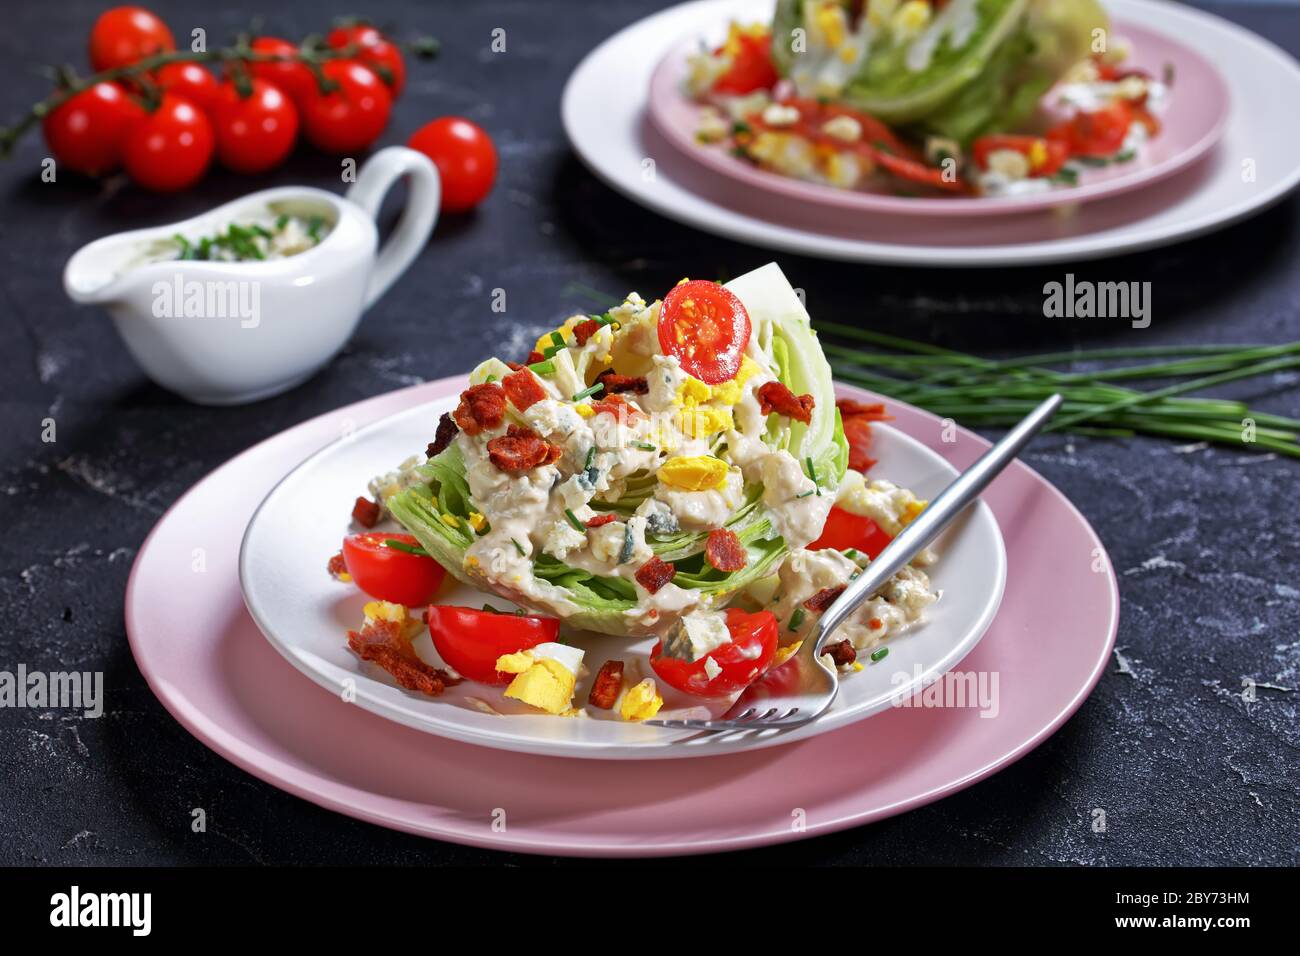 gros plan de la salade iceberg recouverte d'une vinaigrette au fromage bleu, bacon croustillant, tomates cerises, œufs durs, ciboulette sur des assiettes sur un béret Banque D'Images